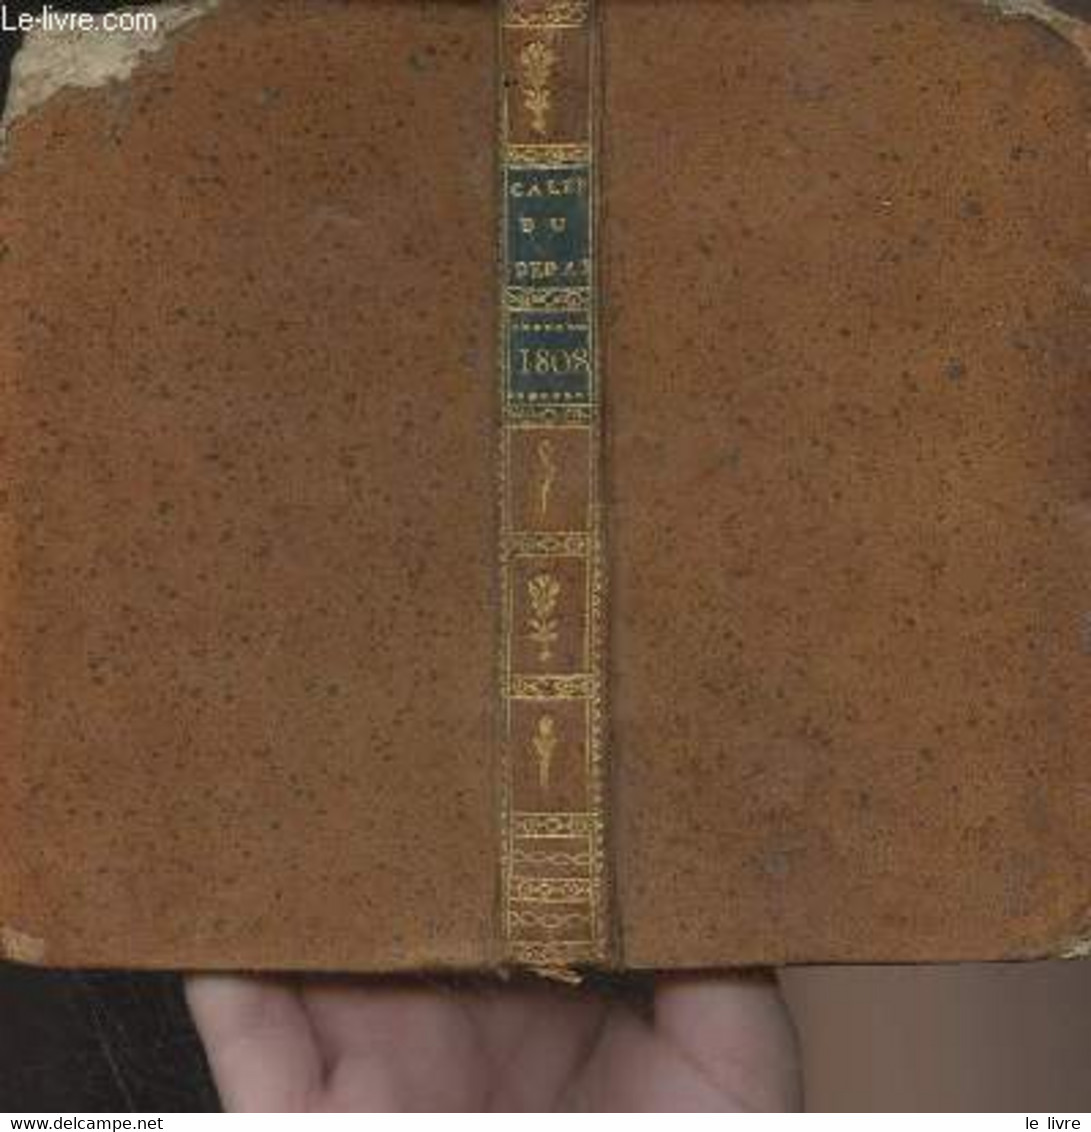 Annuaire Ou Calendrier Du Département De Lot Et Garonne Pour L'année Bissextile 1808 - Collectif - 1808 - Diaries